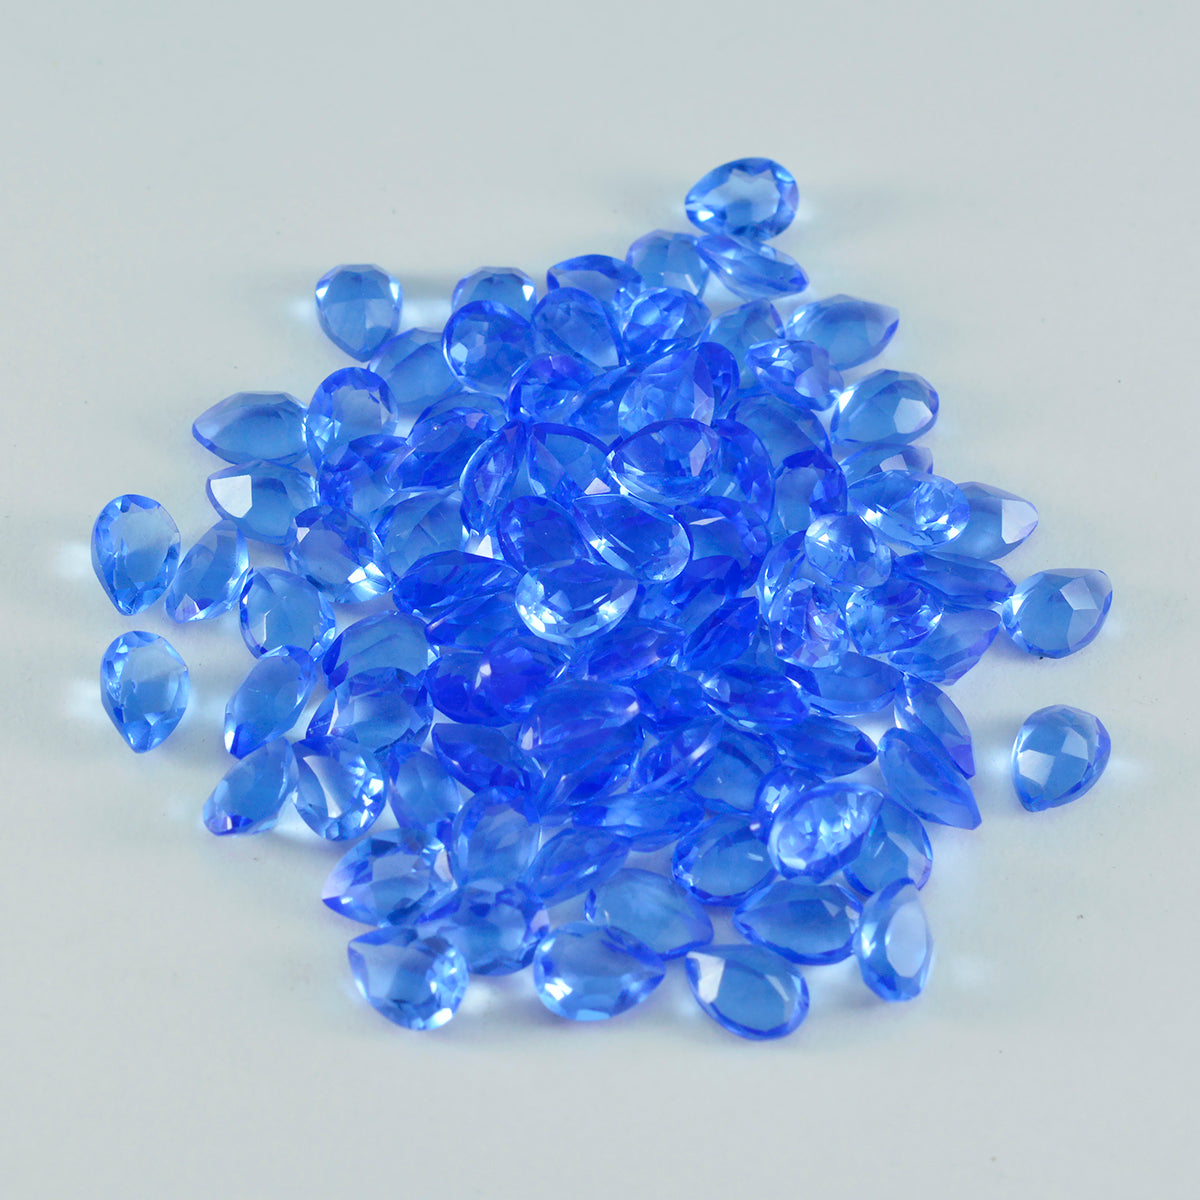 riyogems 1 st blå safir cz facetterad 3x5 mm päronform stilig kvalitet lös ädelsten